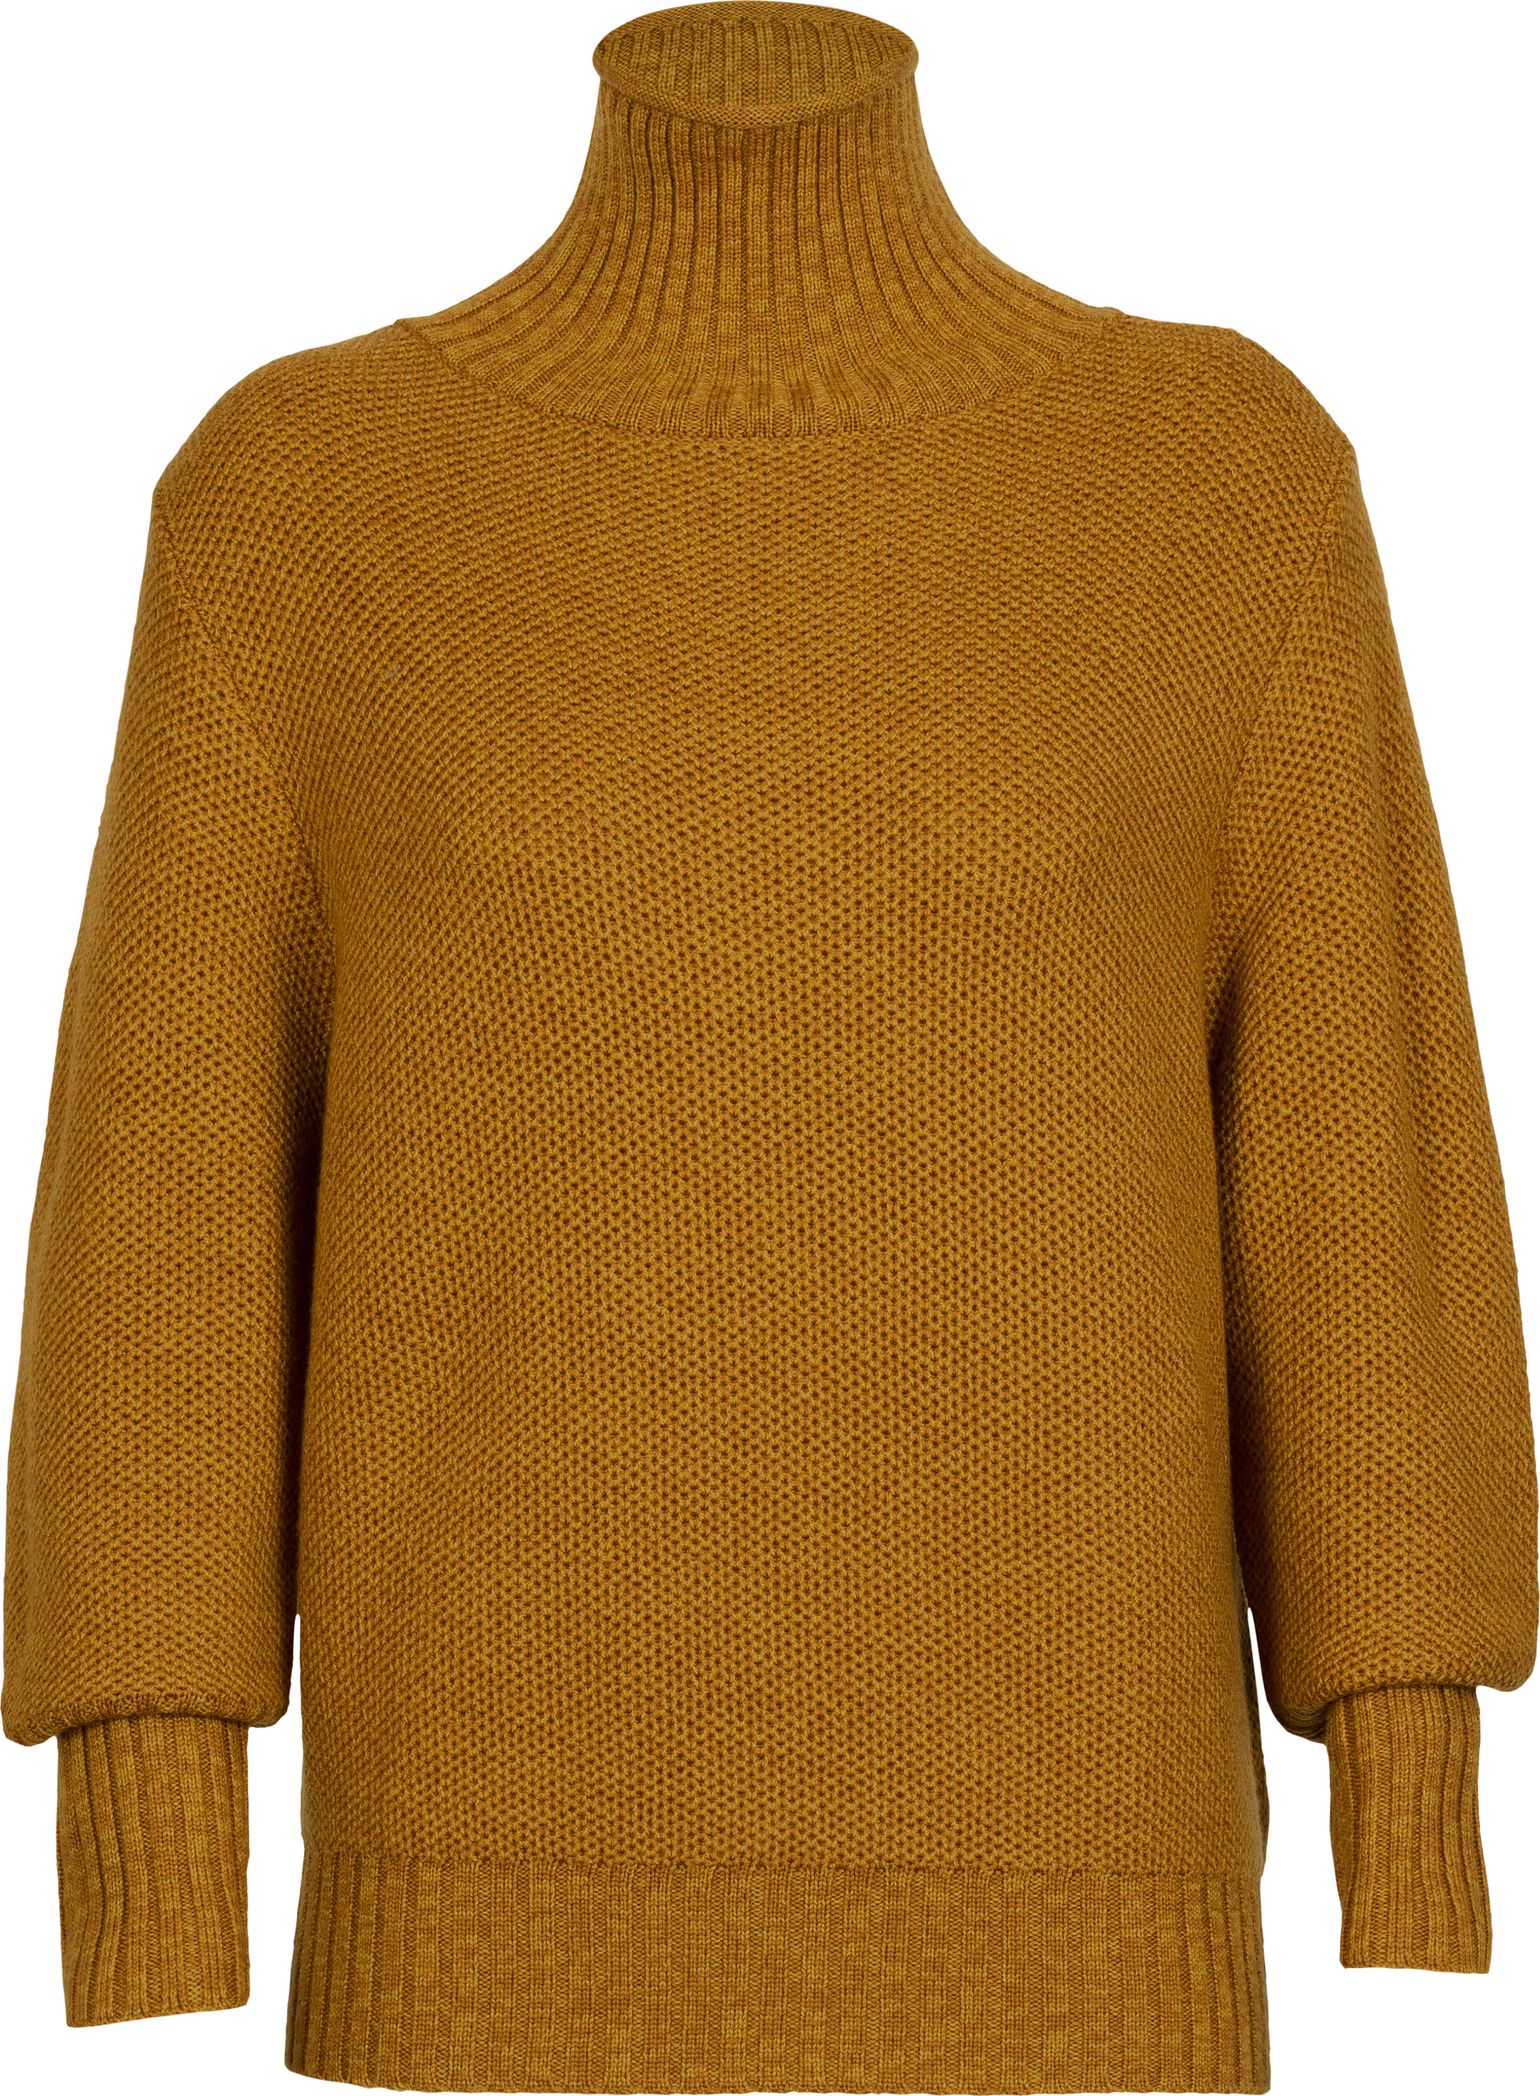 Women's Seevista Funnel Neck Sweater CLOVE/SILENT GOLD